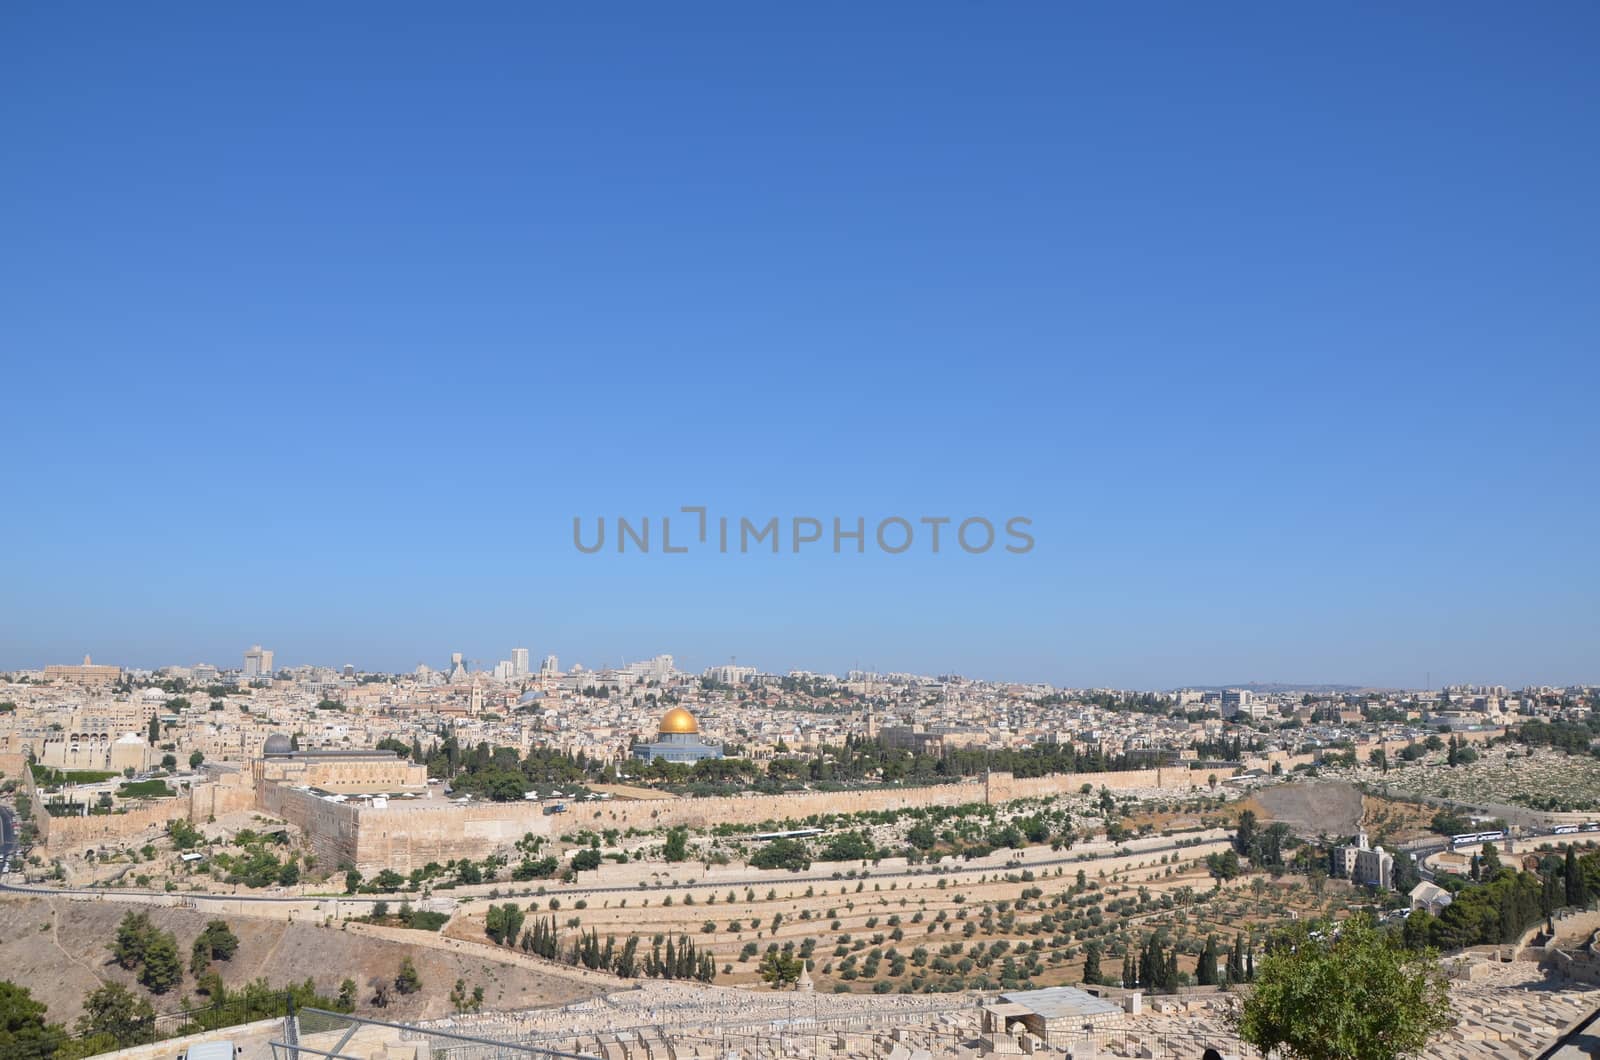 Jerusalem by haawri